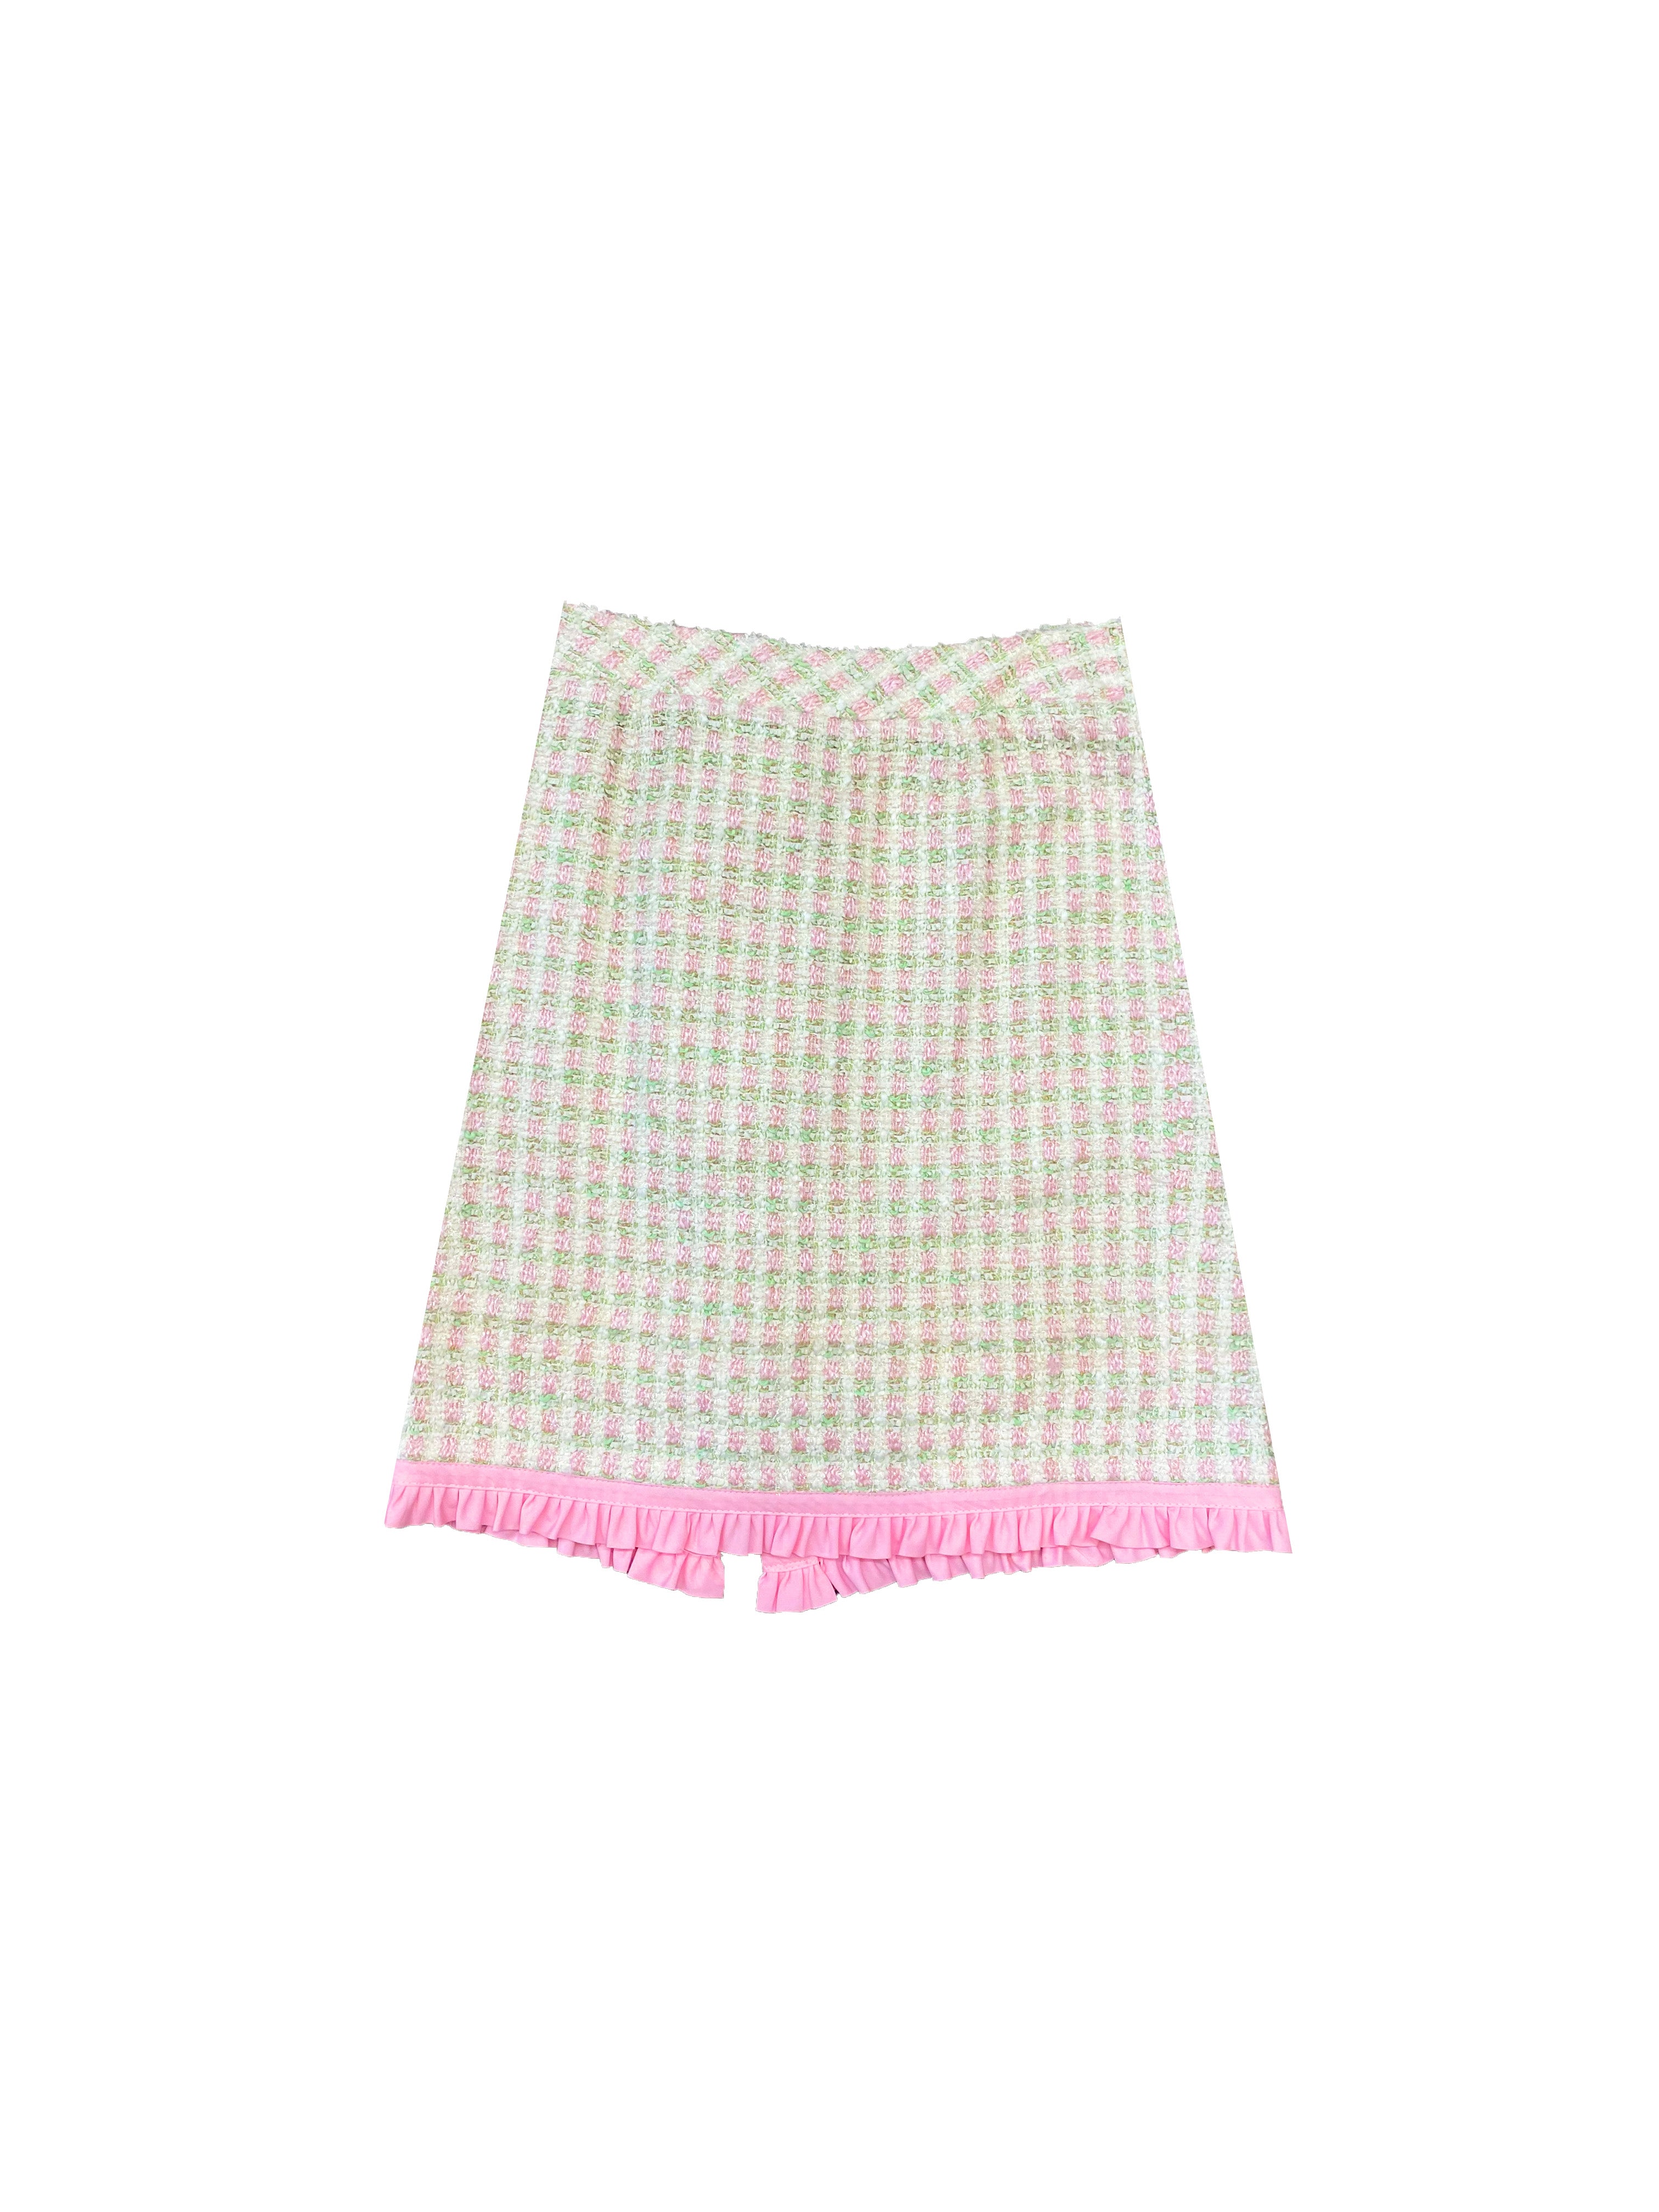 Pink Tweed Vest Crop Top And Mini Skirt Set  Tweed outfit, Tweed fashion, Tweed  skirt outfit